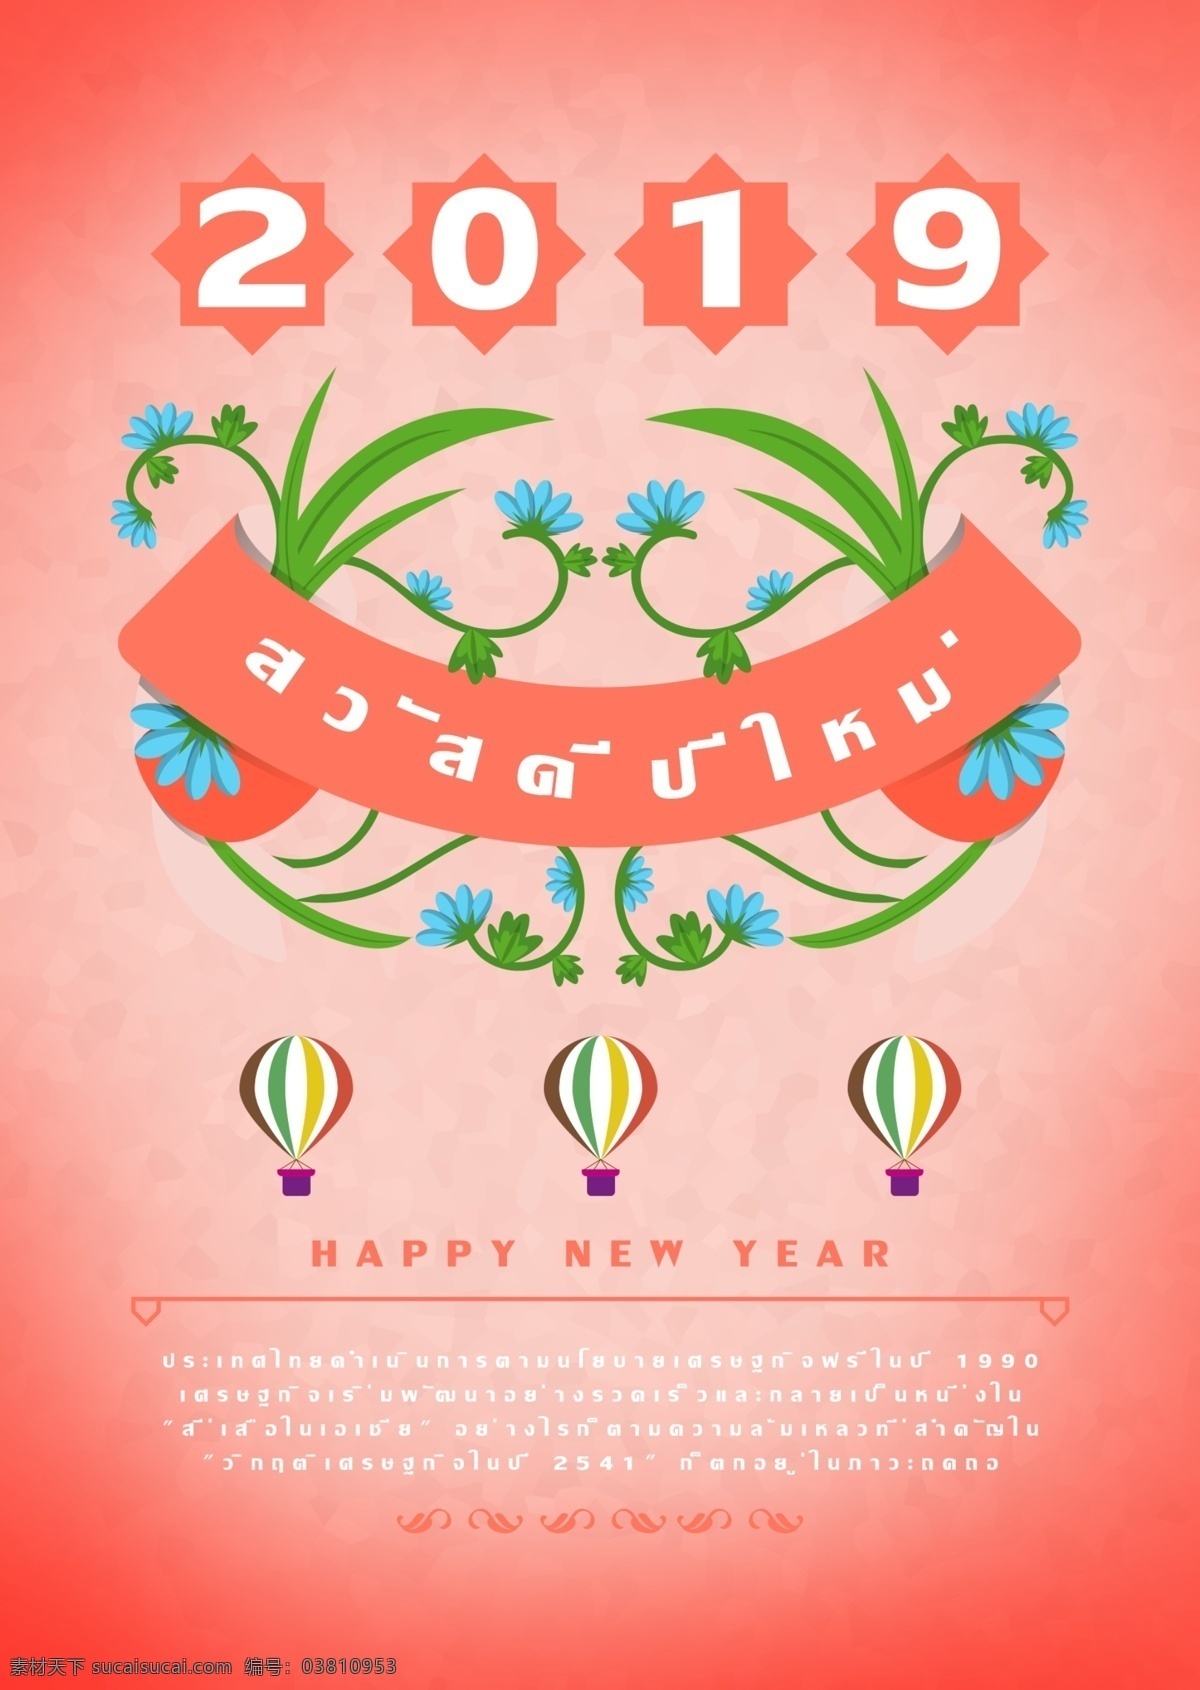 鲜花 一个气球 背景 图像 深 粉红色 功能区 斯波 坎 掌握 材料 新年快乐